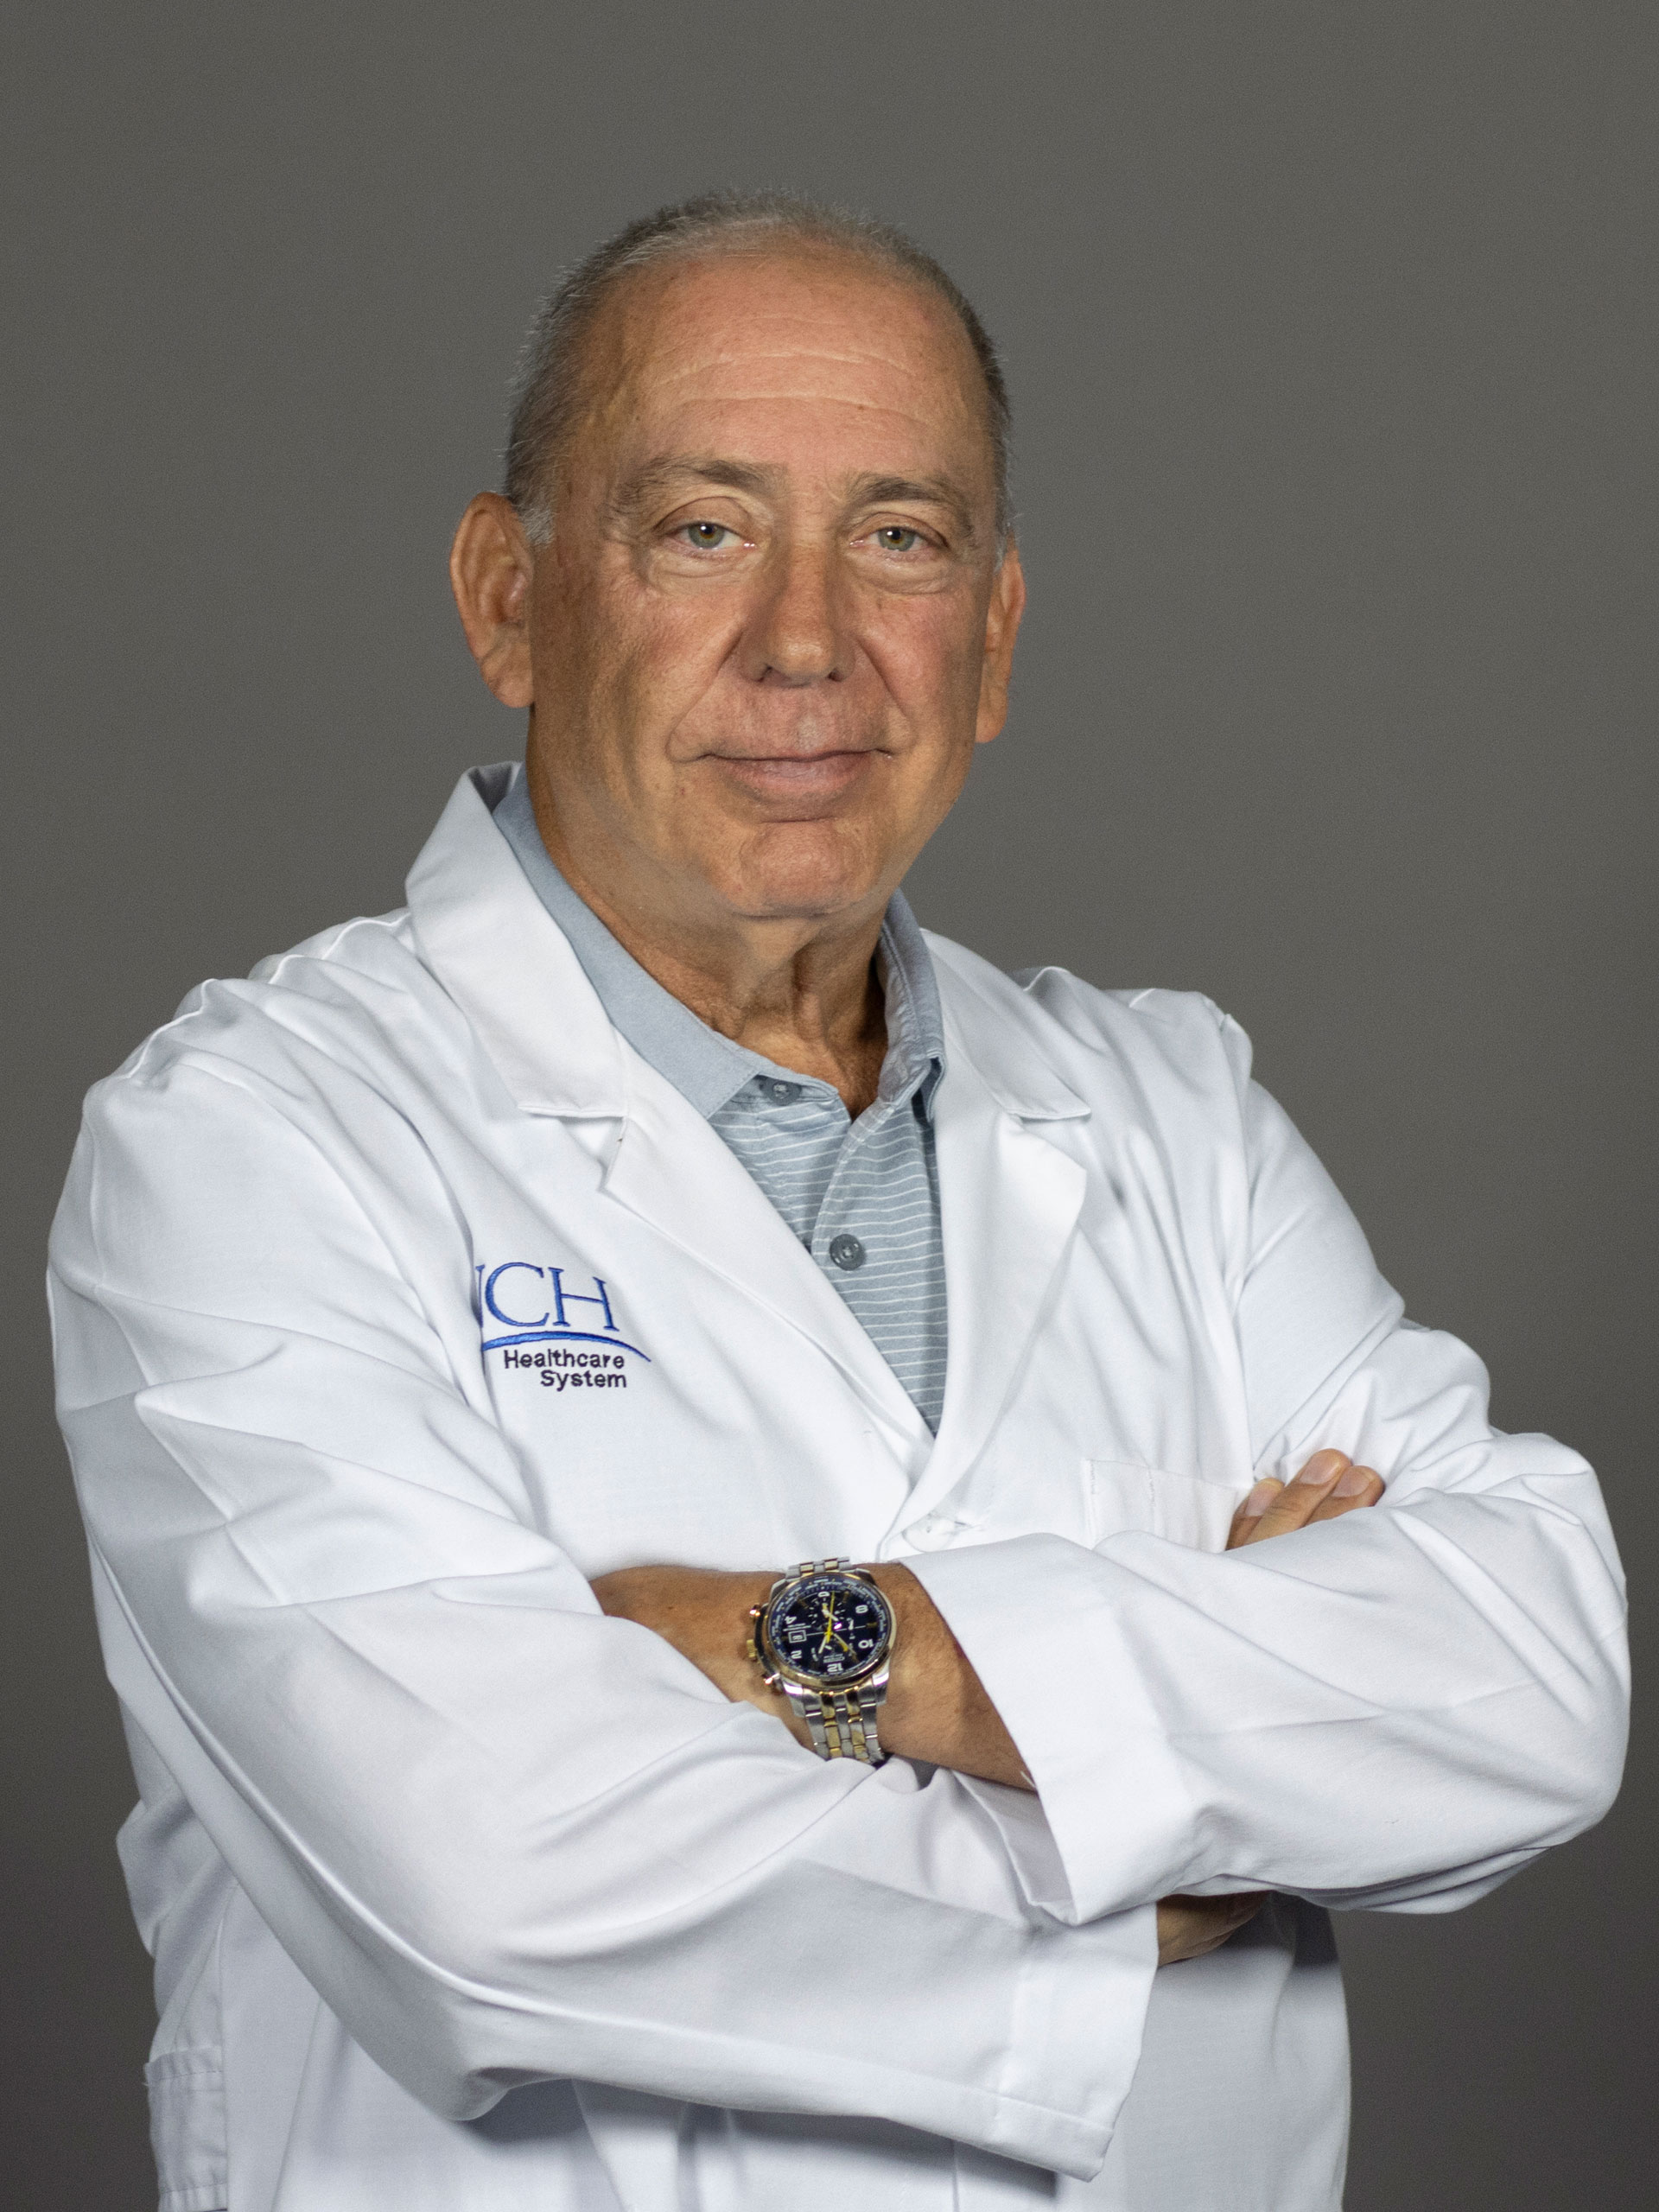 Arthur Labovitz, Clinical Cardiology, Cardiac Imaging